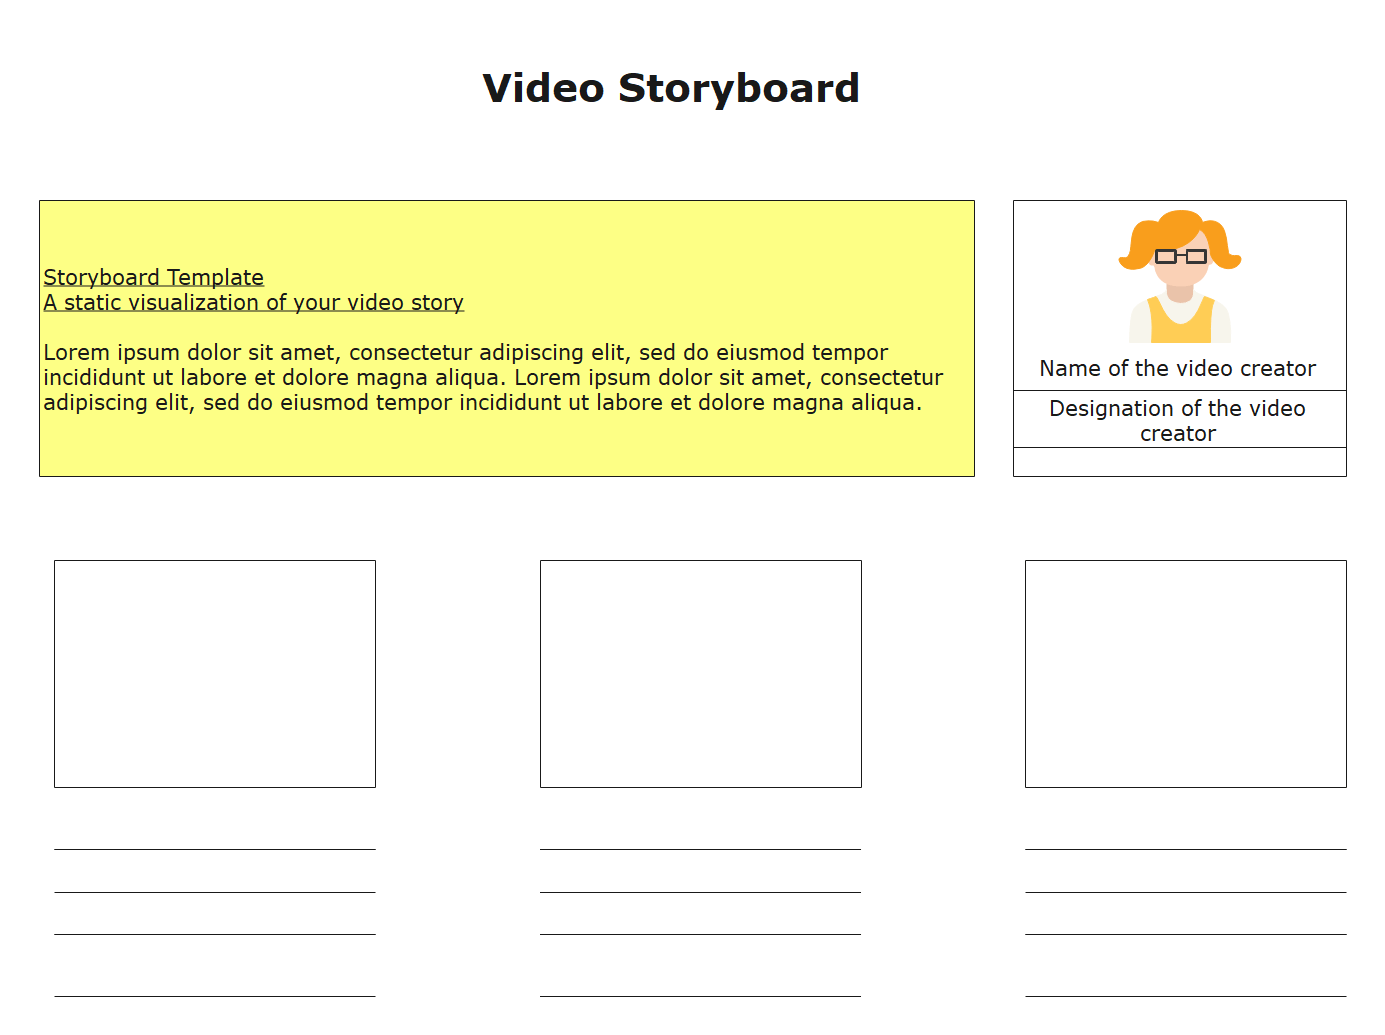 Storyboard em Vídeo